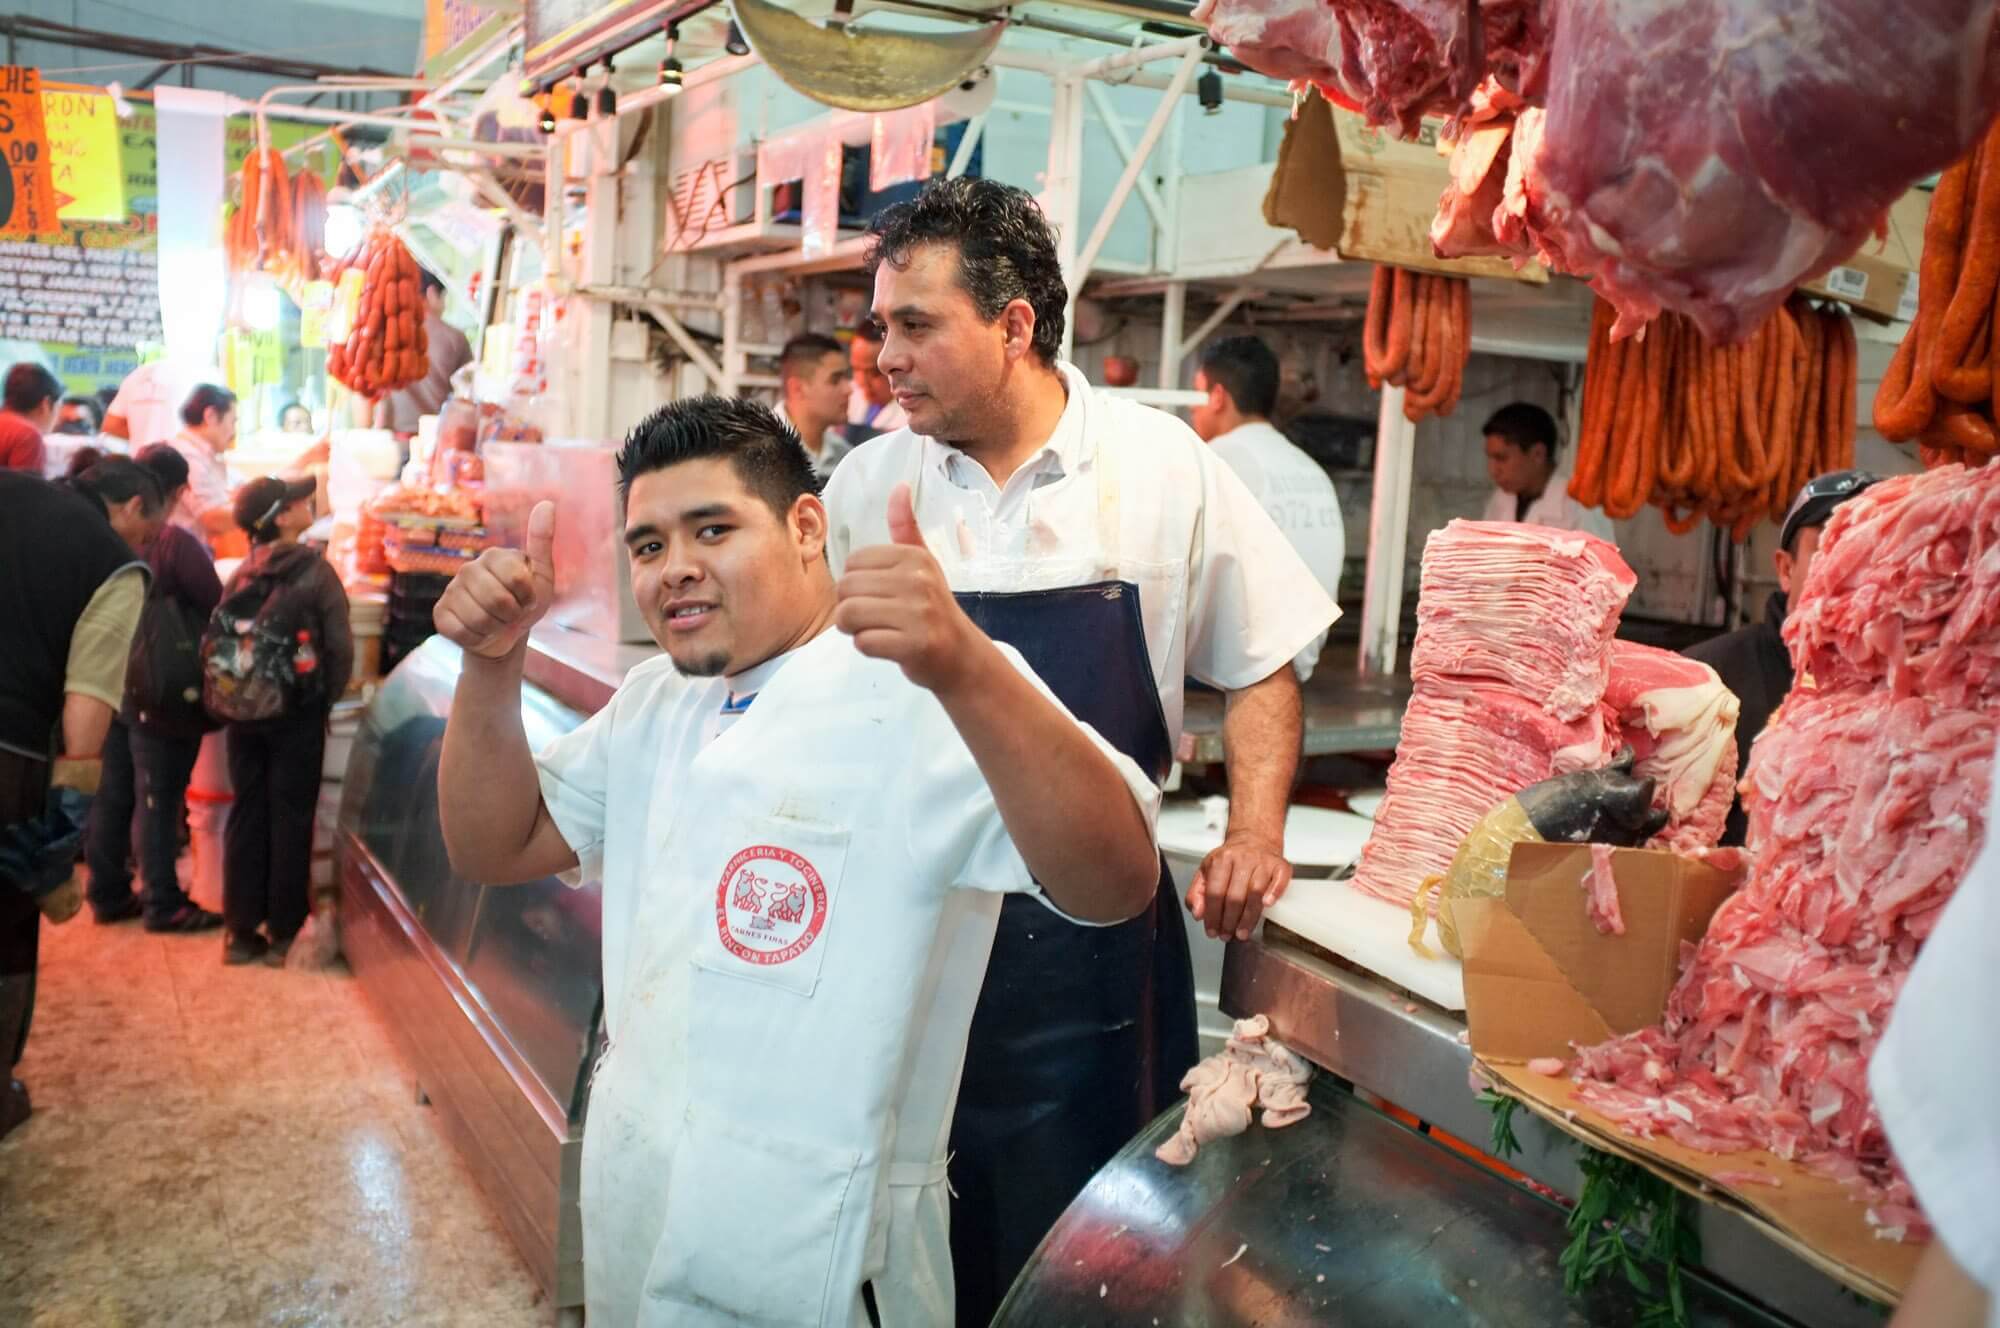 A friendly butcher at La Merced market